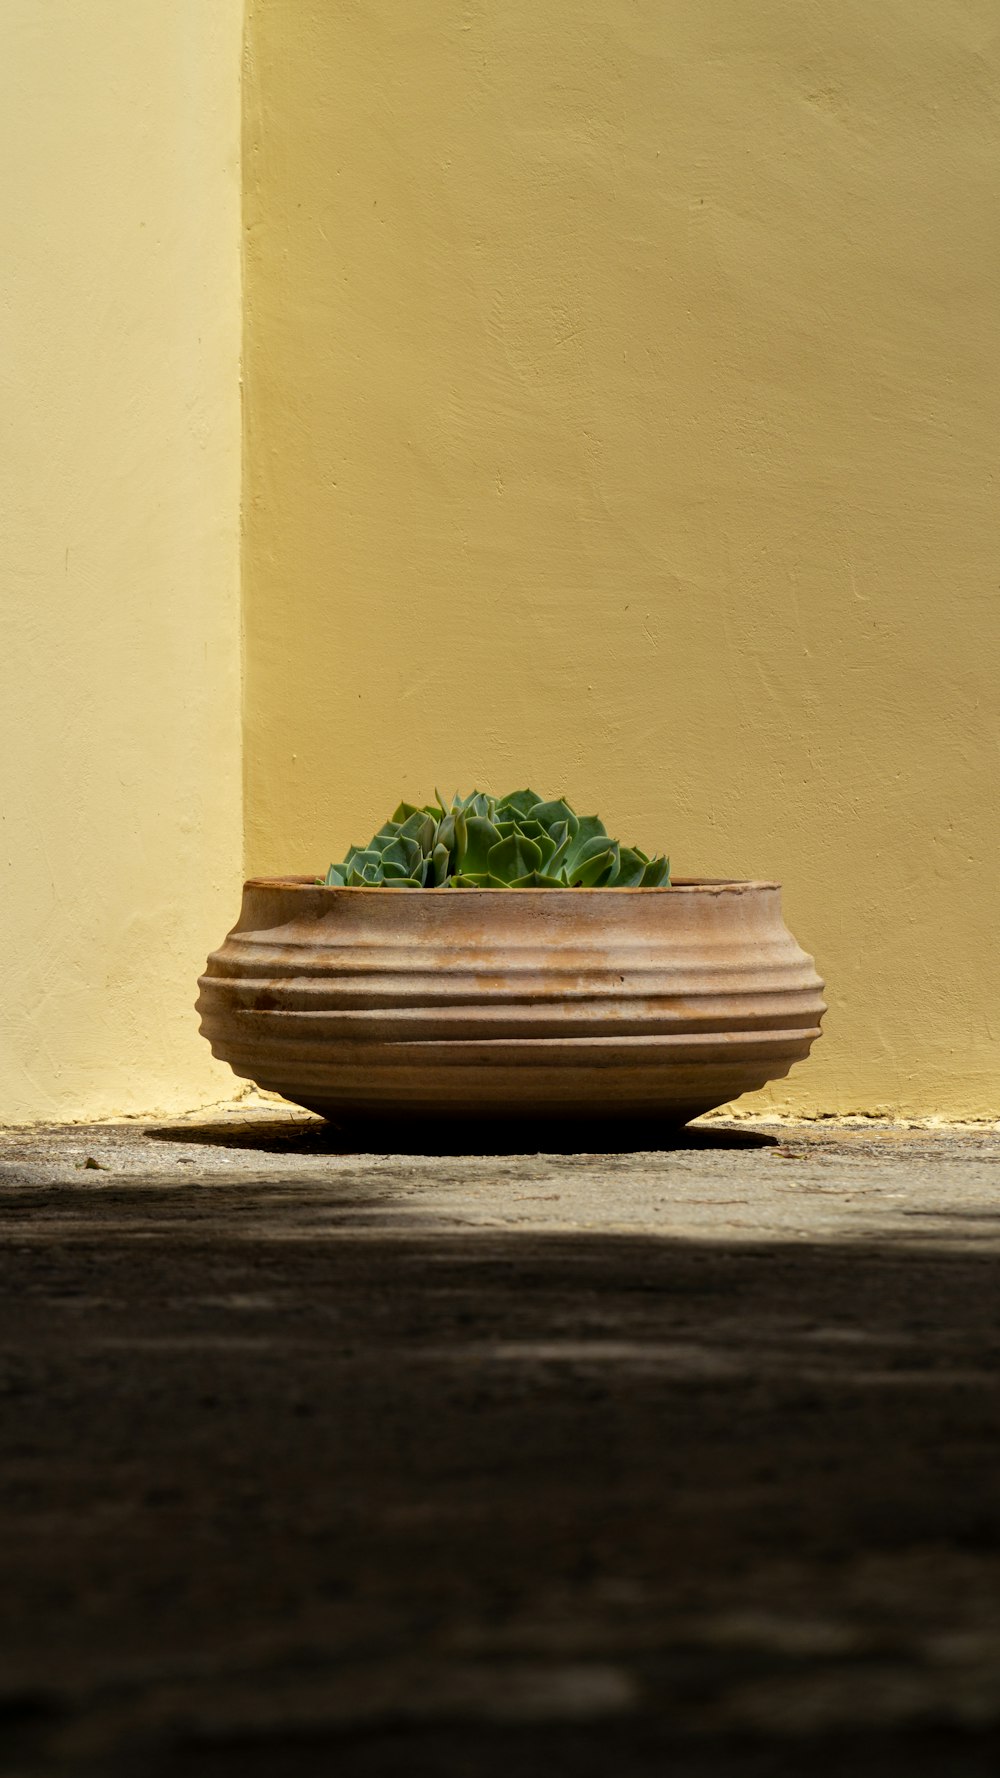 壁の横の茶色の鉢に緑の葉の植物